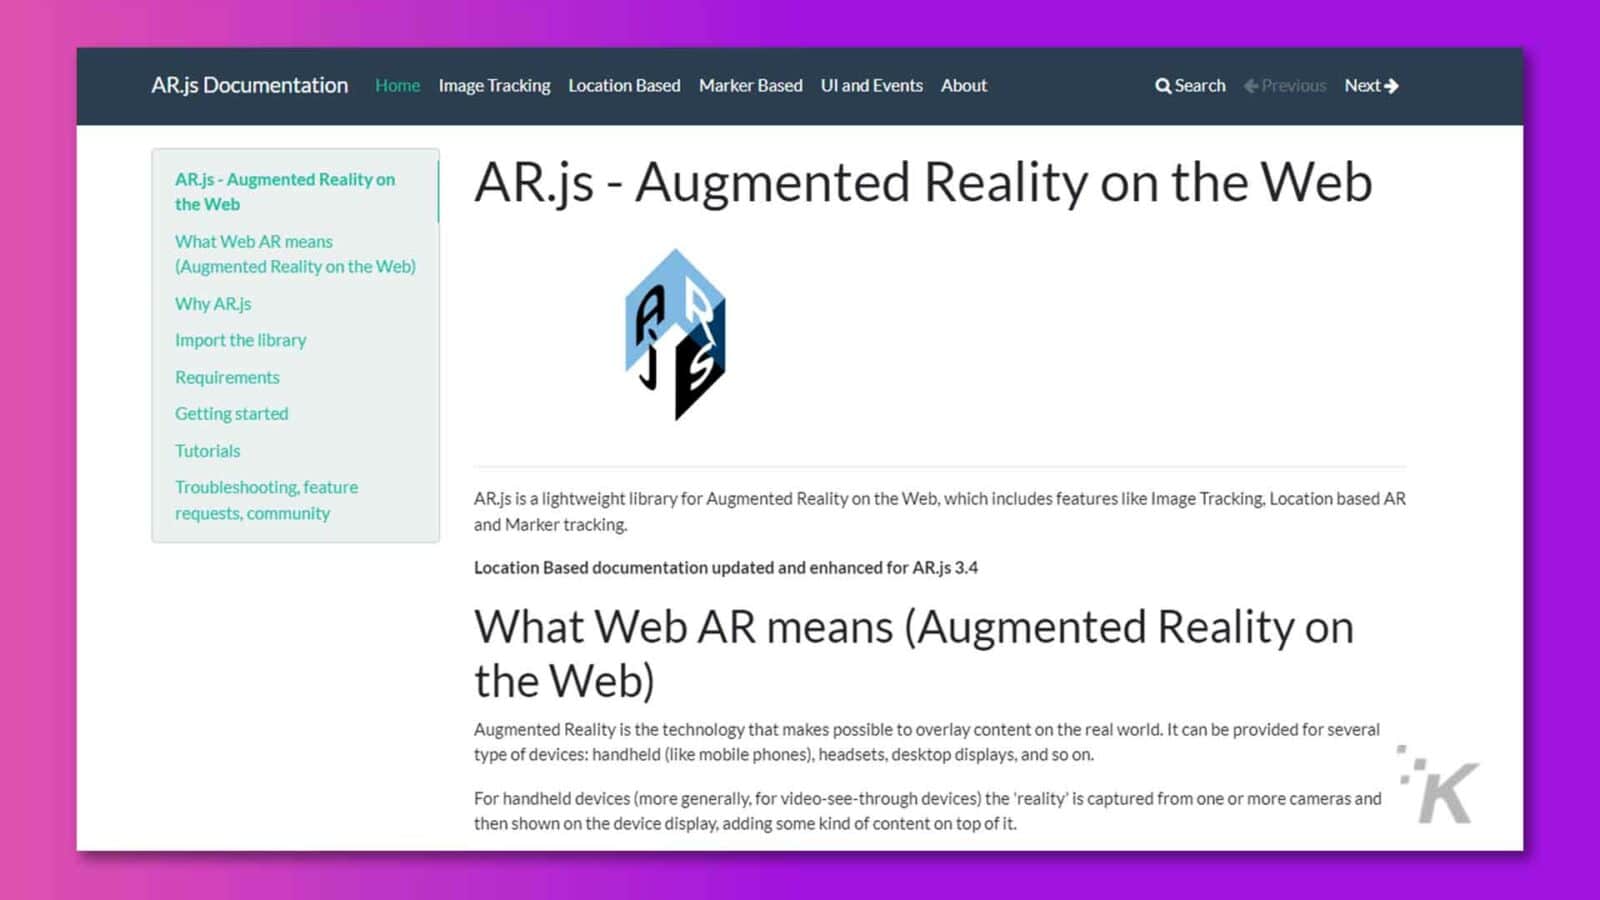 この画像は、Web 上の拡張現実のライブラリ、チュートリアル、トラブルシューティングに関する情報を提供する AR.js ドキュメント ホーム ページを示しています。全文: AR.js ドキュメント ホーム 画像追跡 位置ベースのマーカー ベースの Ul とイベント Q 検索について « 前へ 次へ › AR.js - AR.js 上の拡張現実 - Web 上の拡張現実 Web AR の意味 (拡張現実AR.js を使用する理由 A ライブラリをインポートする 要件 はじめに チュートリアル トラブルシューティング、機能リクエスト、コミュニティ AR.js は、画像追跡、位置ベースの AR、マーカー追跡などの機能を含む、Web 上の拡張現実のための軽量ライブラリです。ロケーションベースのドキュメントが AR.js 3.4 用に更新および強化されました。 Web AR の意味 (Web 上の拡張現実) 拡張現実は、現実世界にコンテンツをオーバーレイすることを可能にするテクノロジーです。これは、ハンドヘルド (携帯電話など)、ヘッドセット、デスクトップ ディスプレイなど、さまざまなタイプのデバイスに提供できます。ハンドヘルド デバイス (より一般的にはビデオ シースルー デバイス) の場合、「現実」は 1 つまたは複数のカメラからキャプチャされ、デバイスのディスプレイに表示され、その上にある種のコンテンツが追加されます。